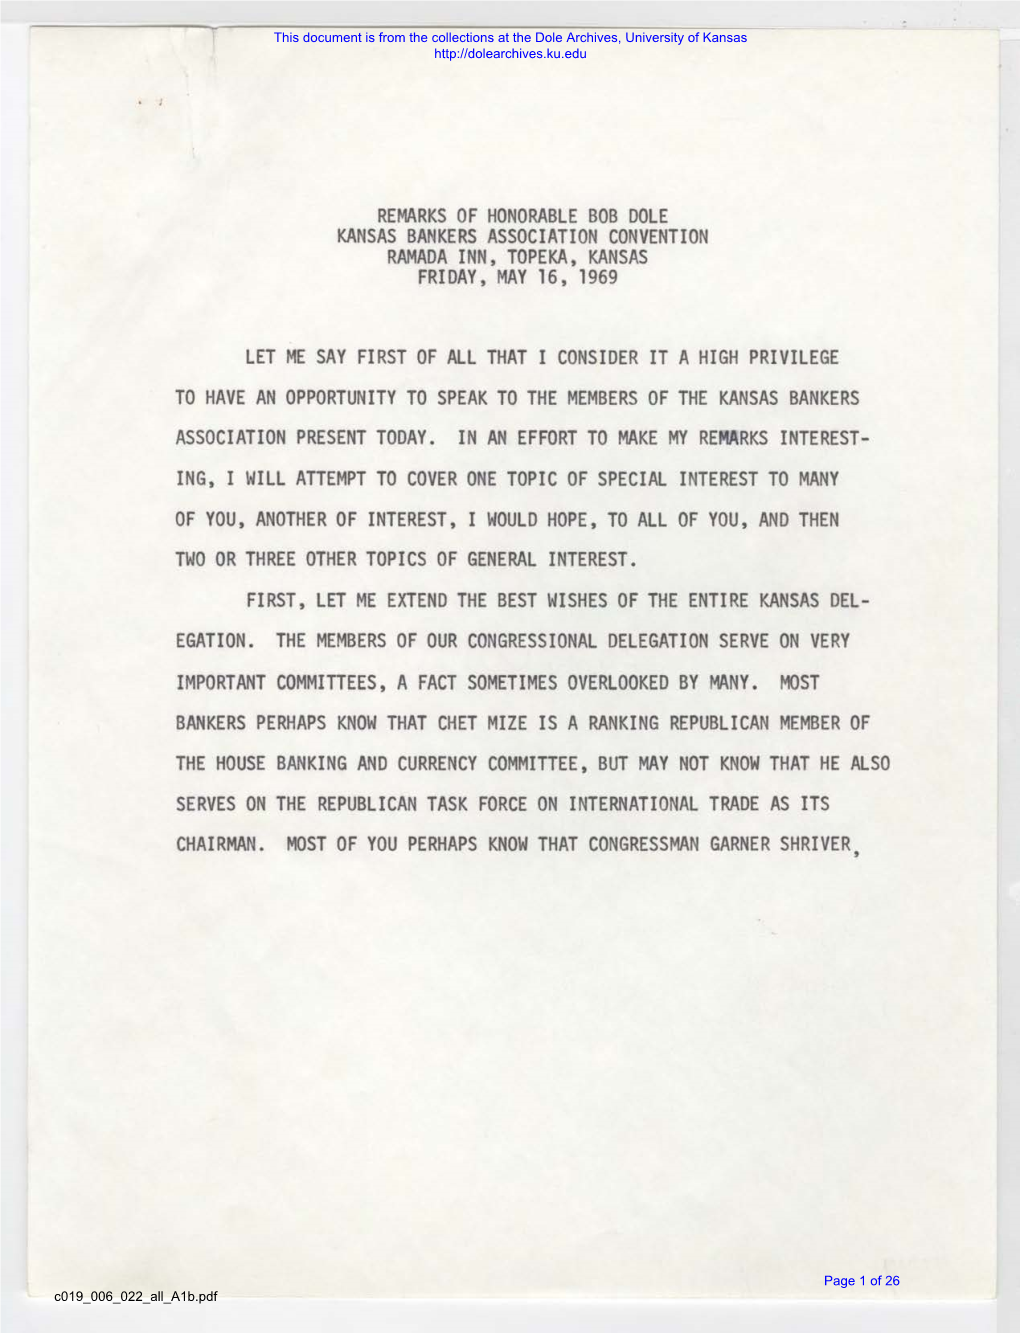 Remarks of Honorable Bob Dole Kansas Bankers Association Convention Ramada Inn, Topeka, Kansas Friday, May 16, 1969